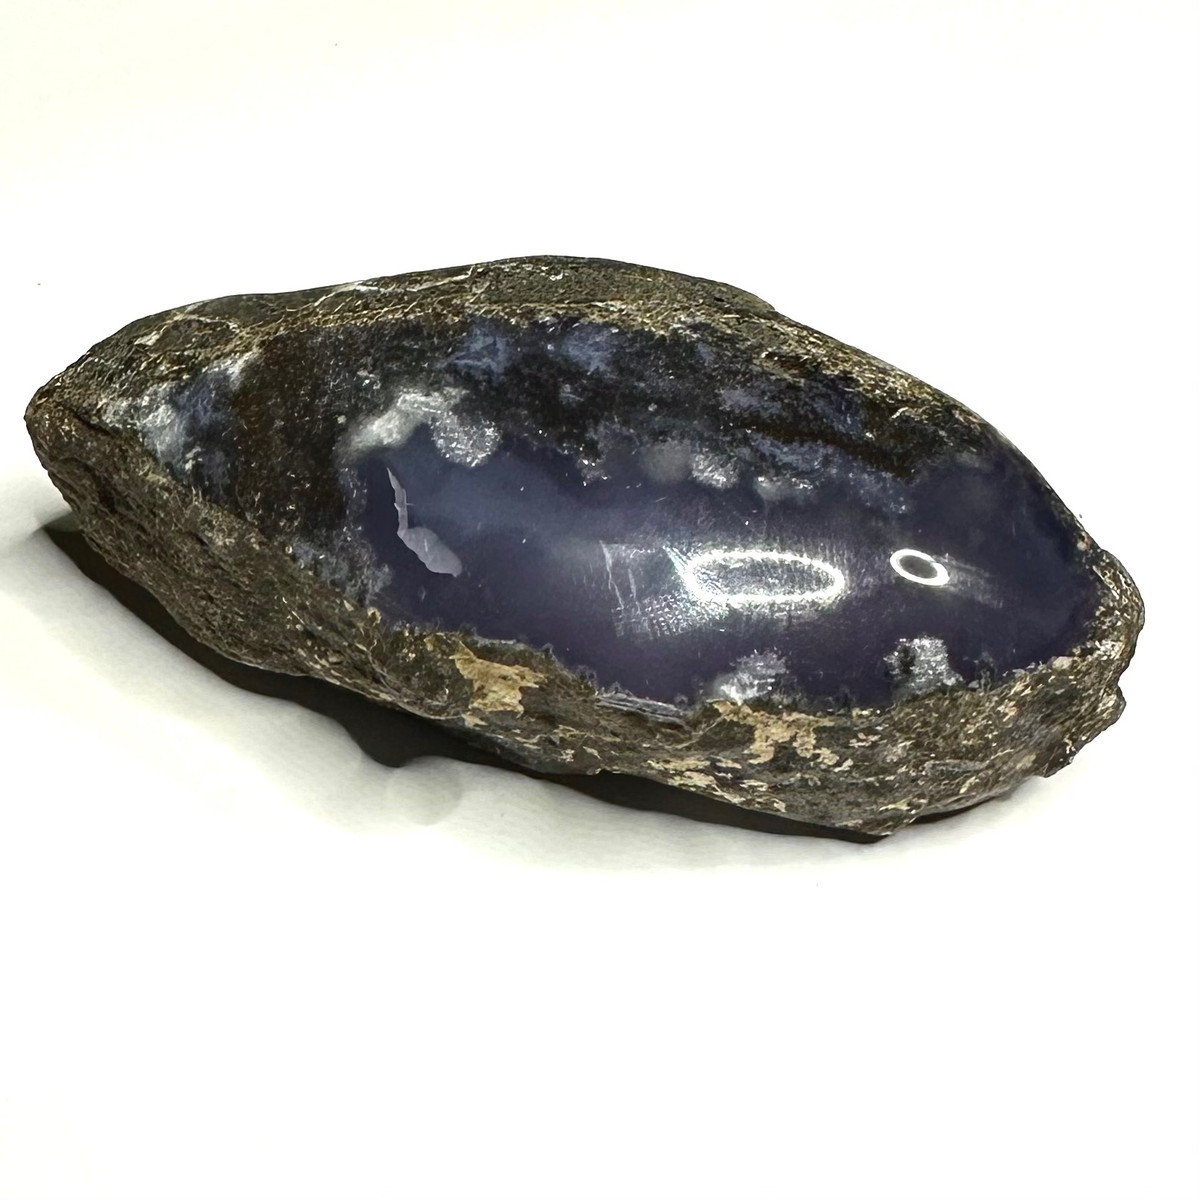 One of a Kind Purple Chalcedony Specimen Stone-3 1/2 x 1 1/2"